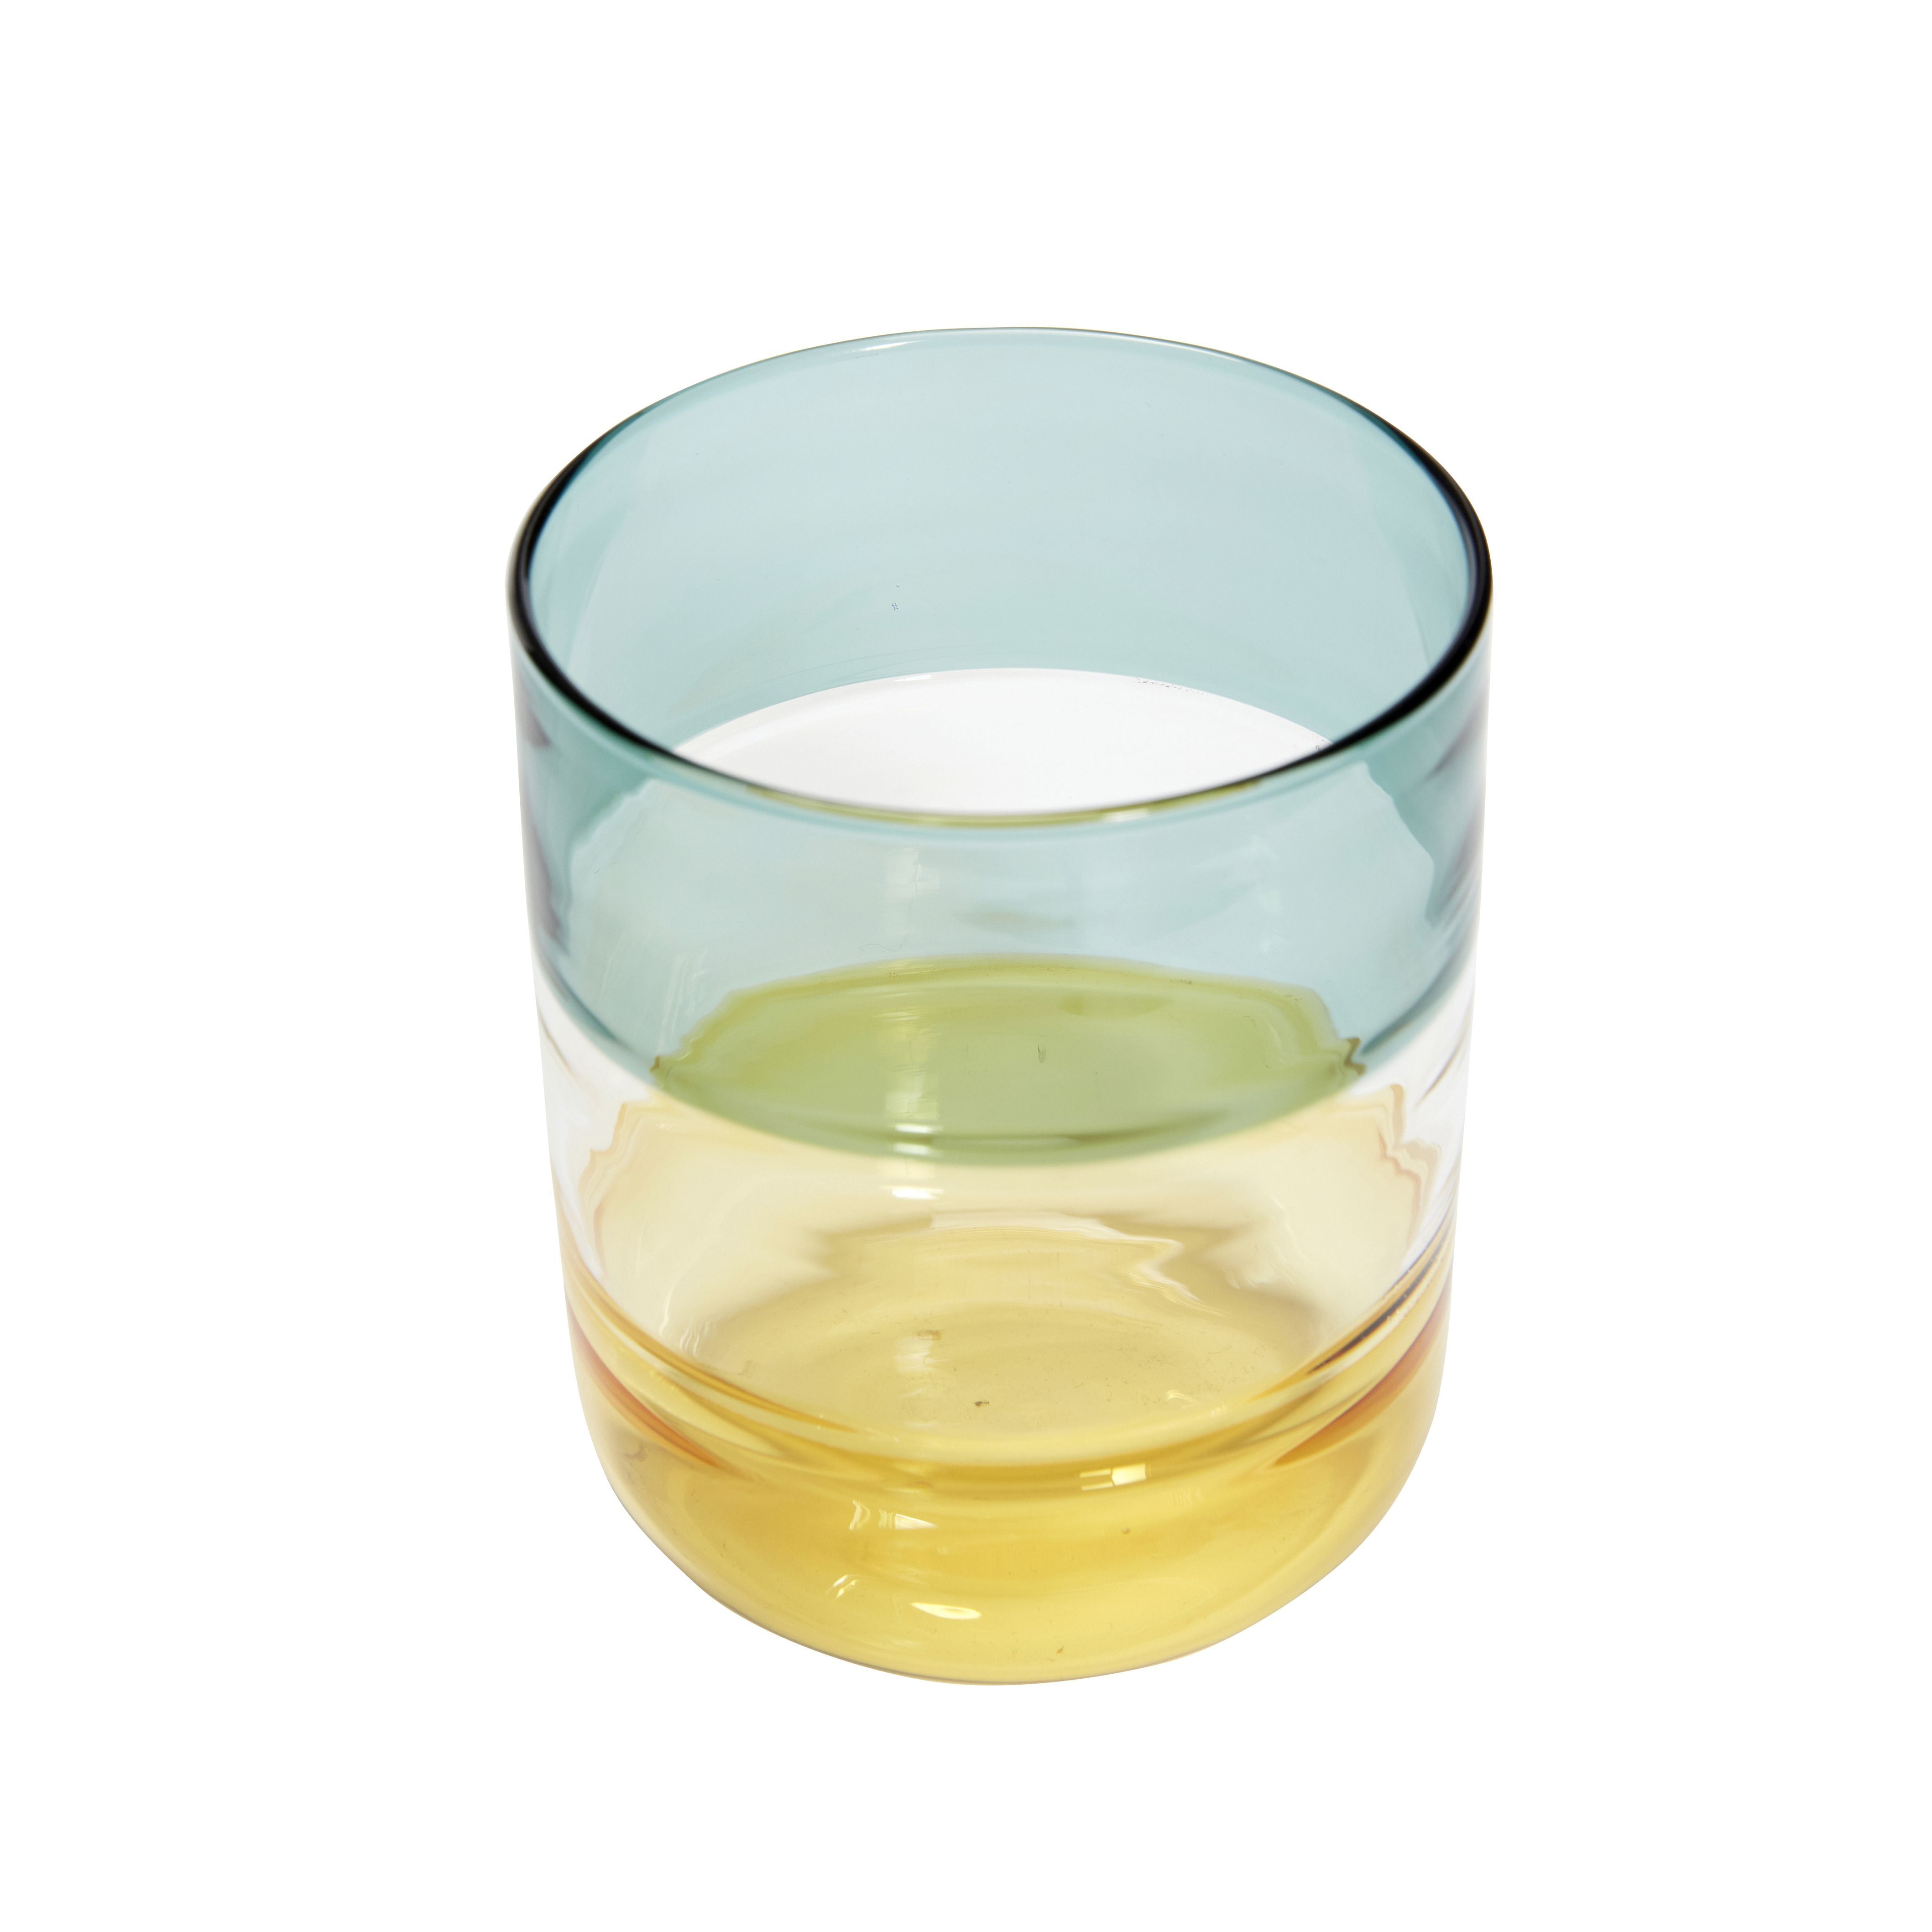 Hübsch Limonade Trinkglas Glas Klar/Bernstein/Rosa/Grün/Gelb